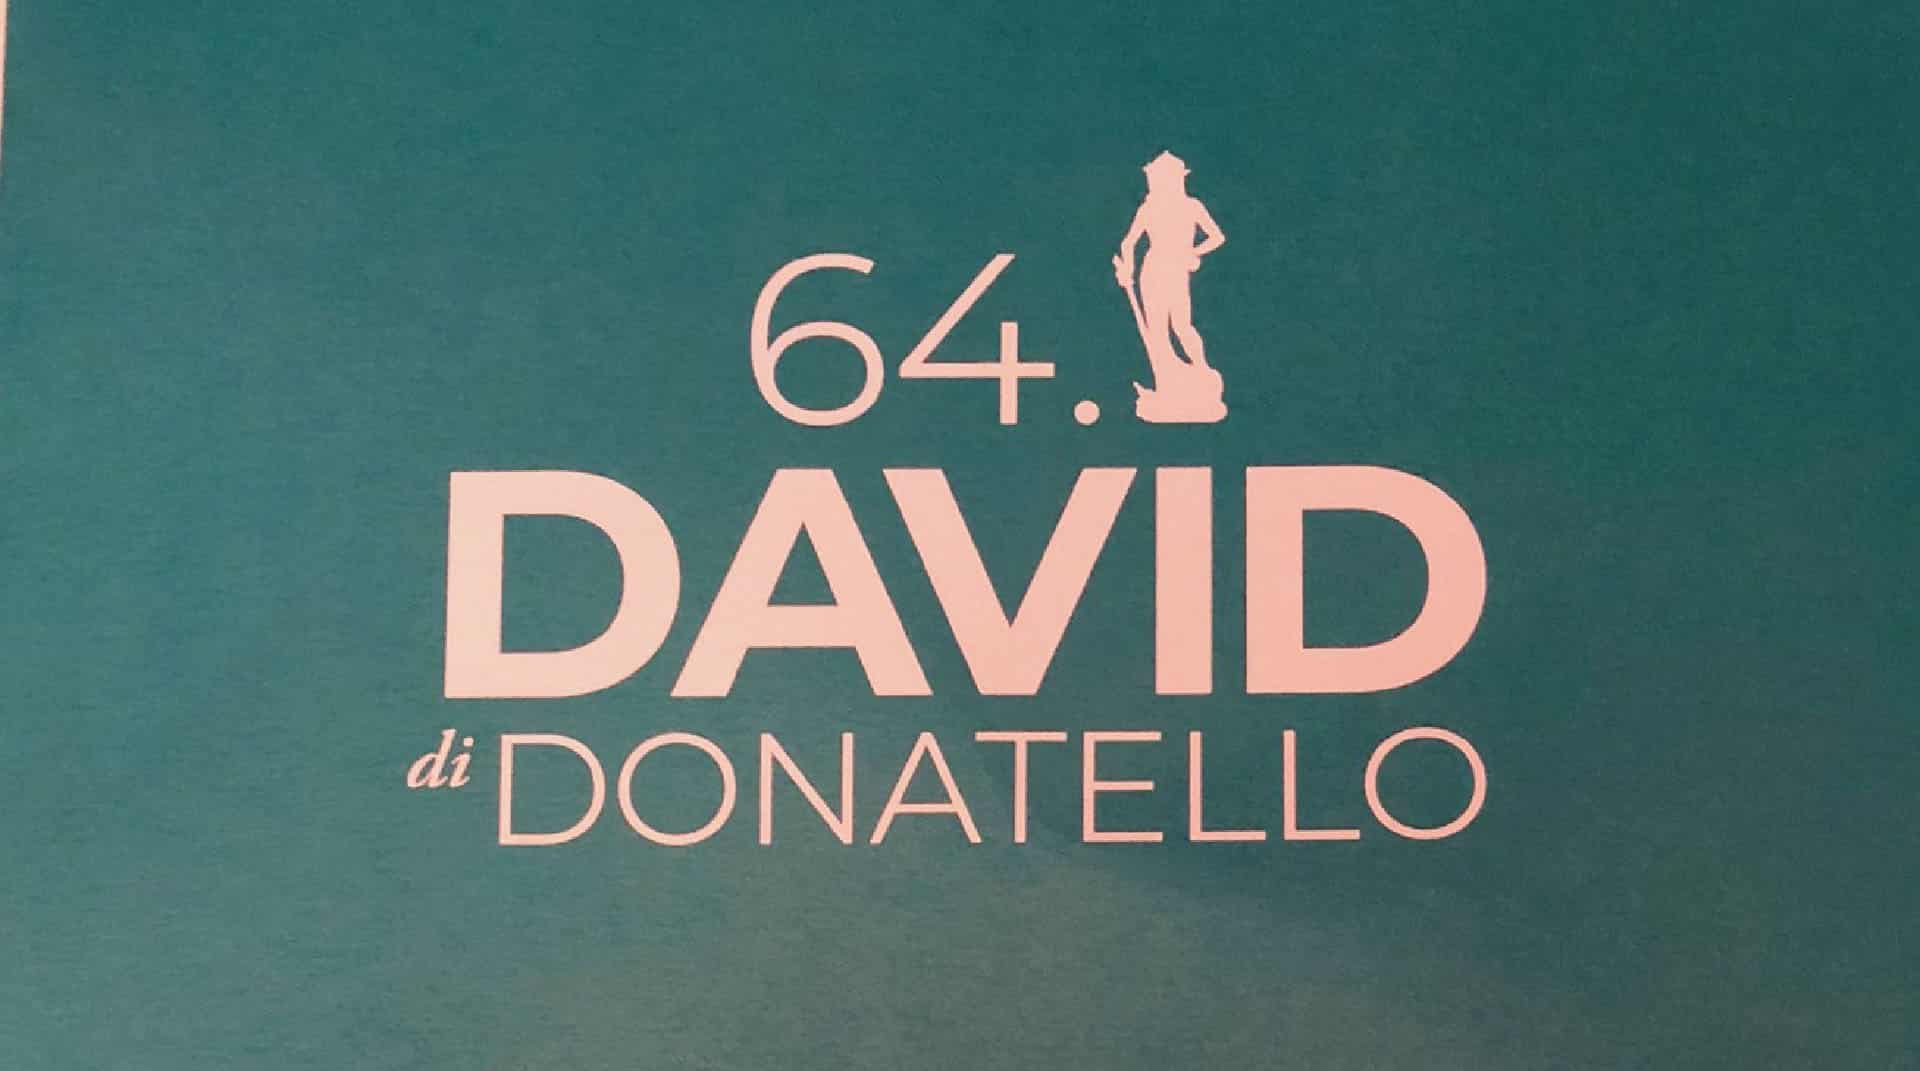 David di Donatello 2019 nomination, date e giuria. Quando è la premiazione